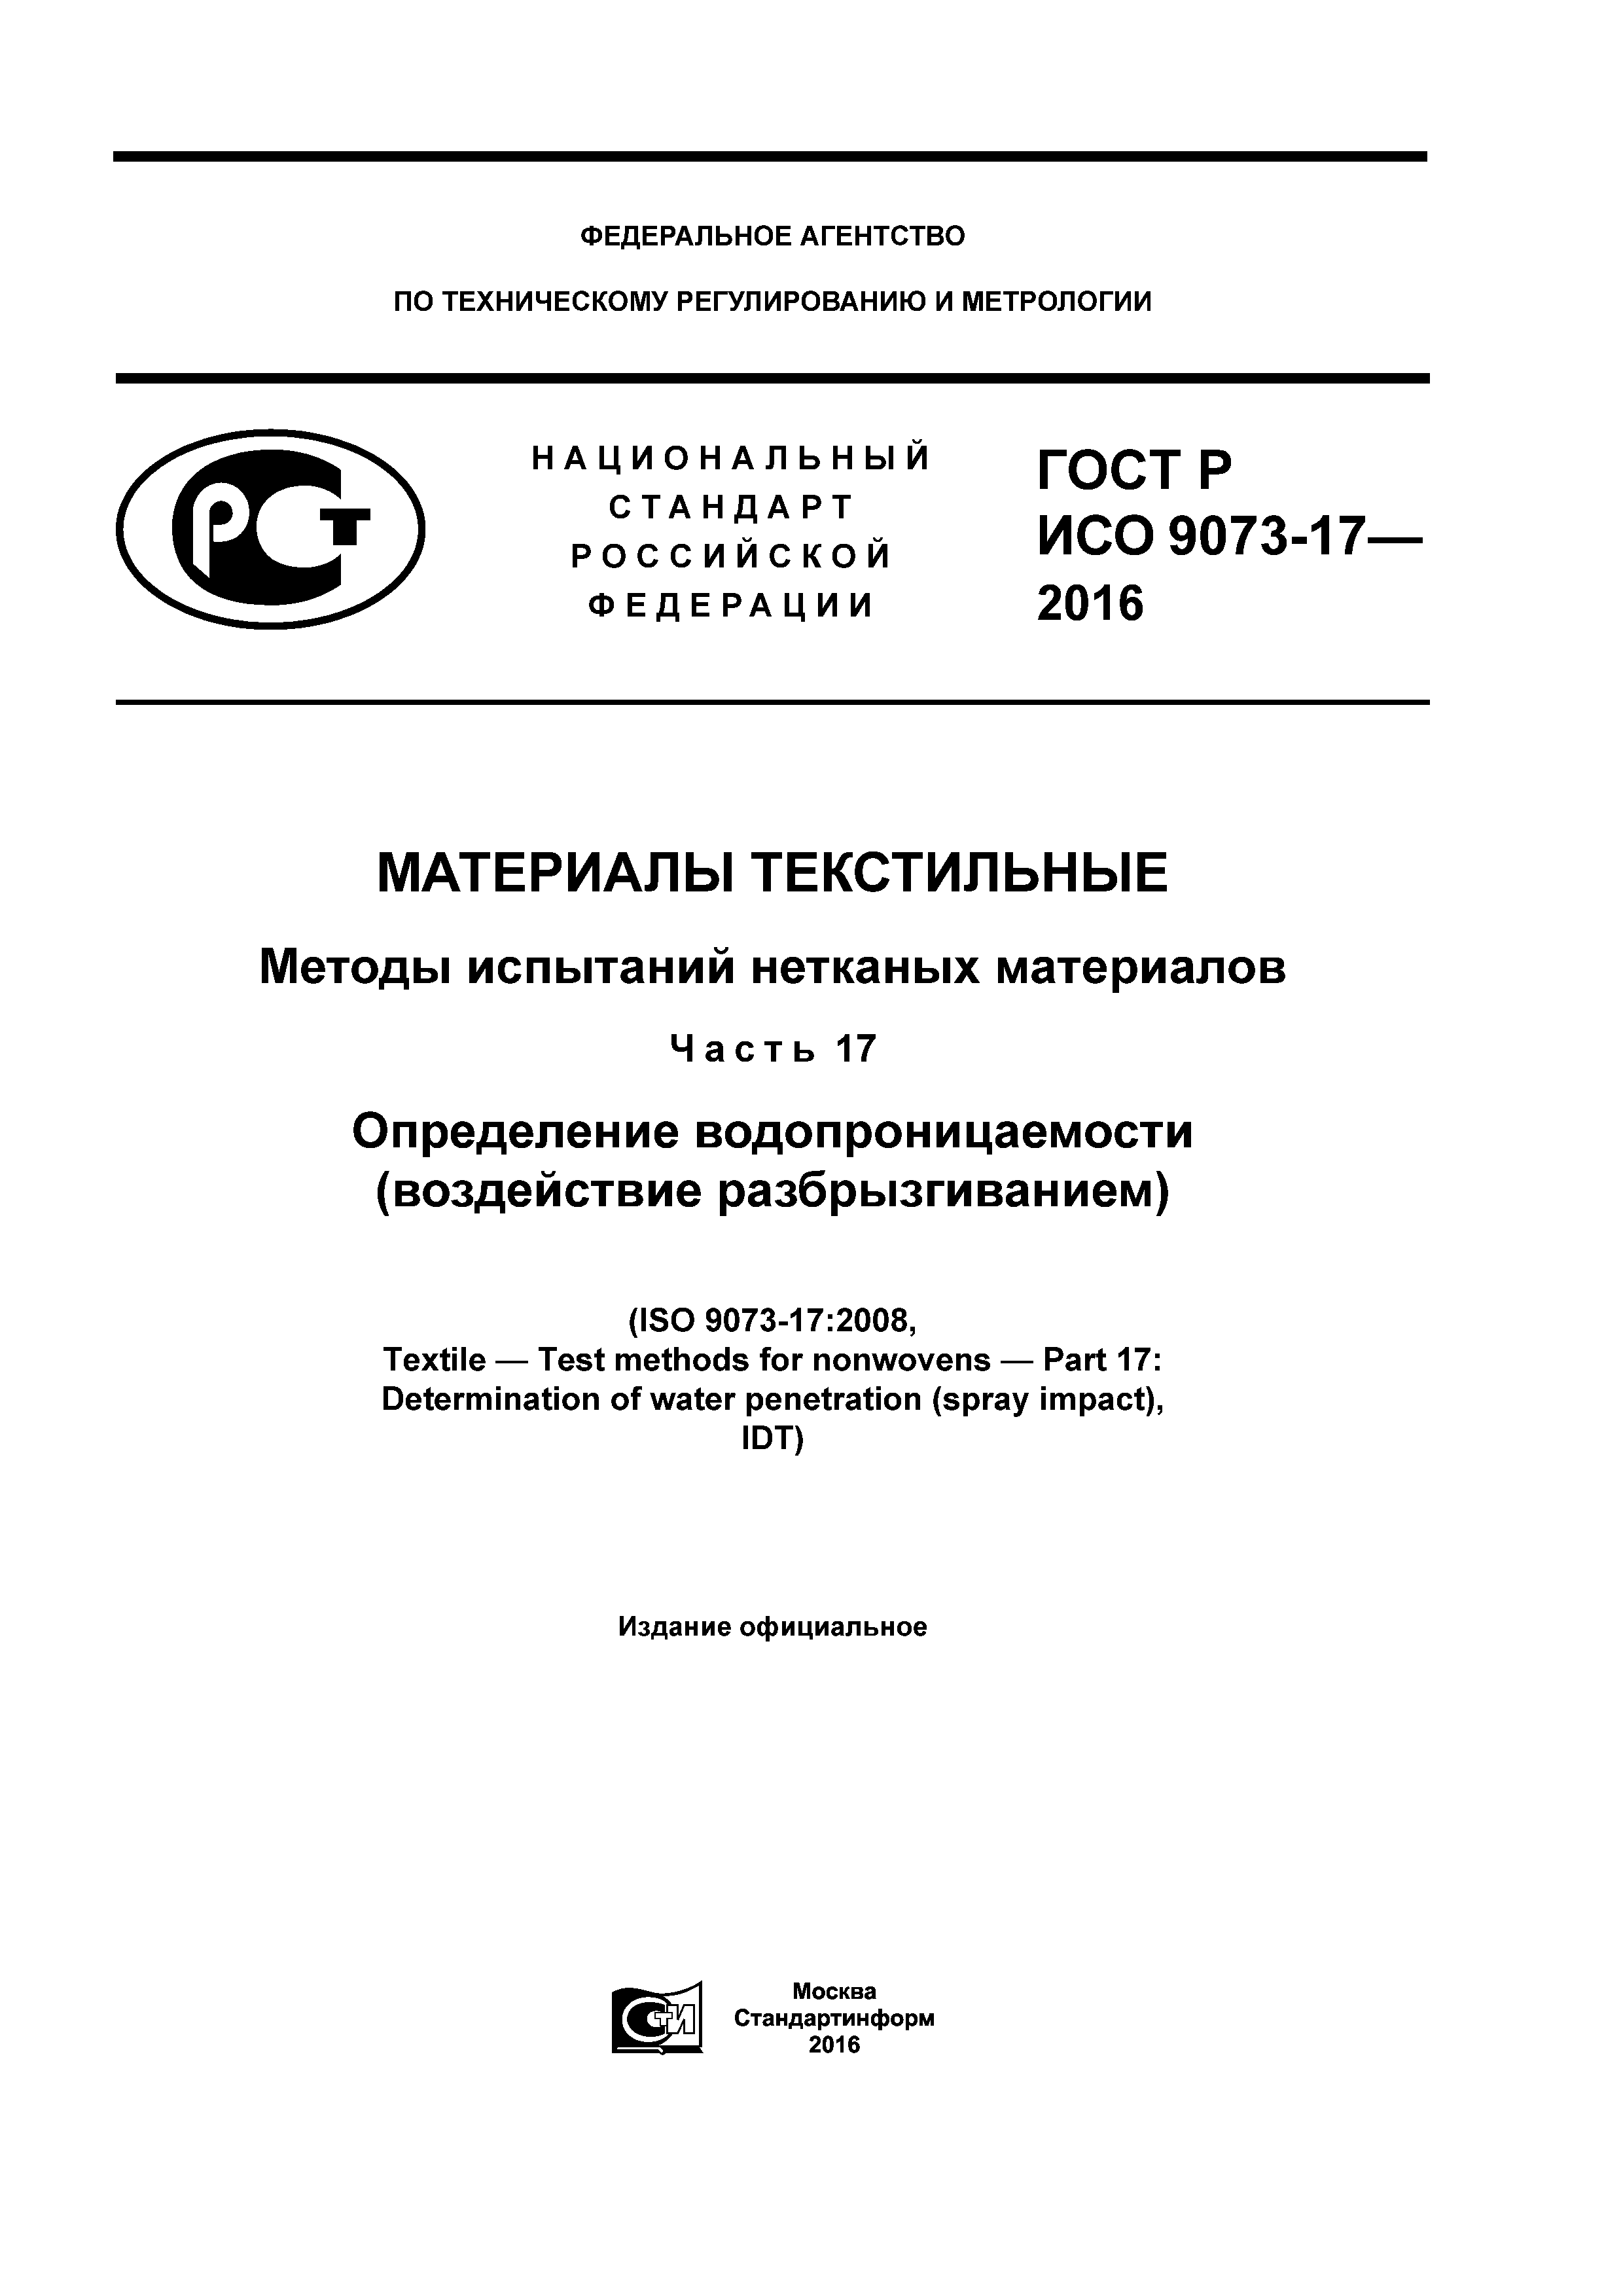 ГОСТ Р ИСО 9073-17-2016